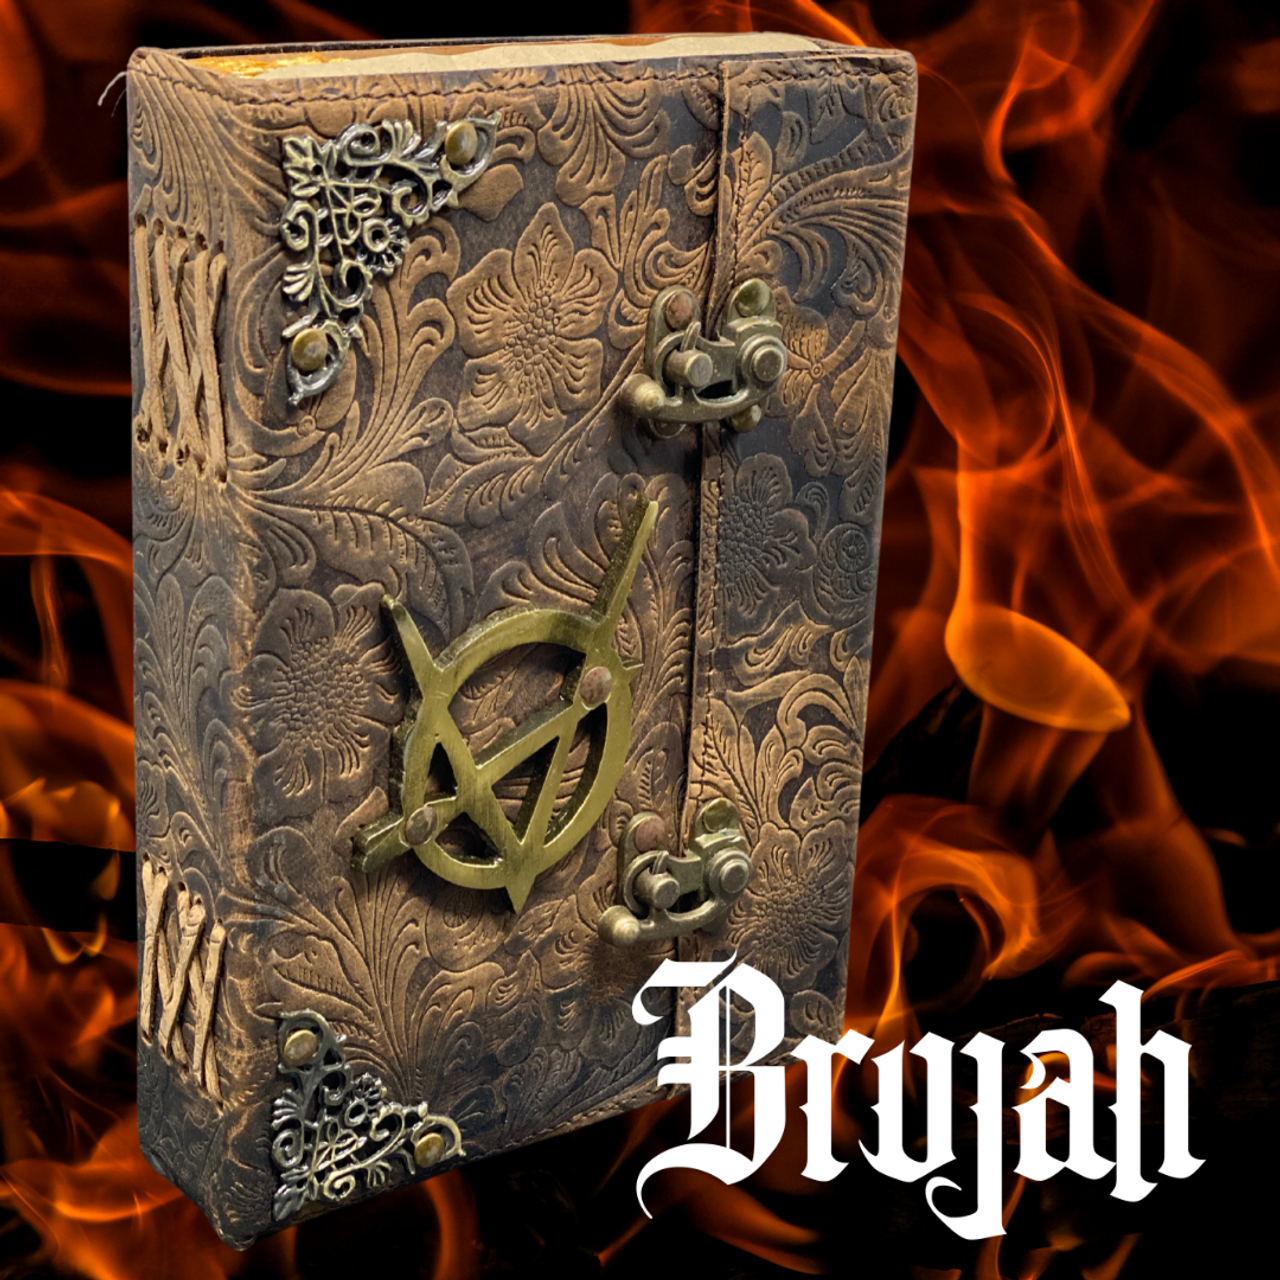 Leather-bound Brujah Journal / Sketchbook